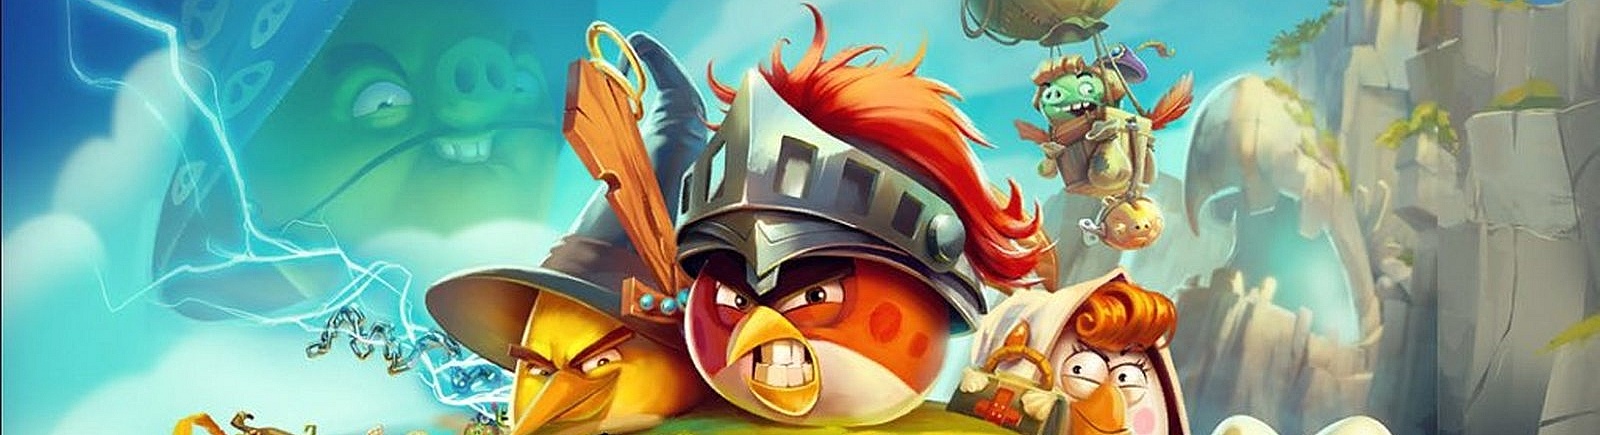 Дата выхода Angry Birds Epic  на iOS, Android и Phone в России и во всем мире